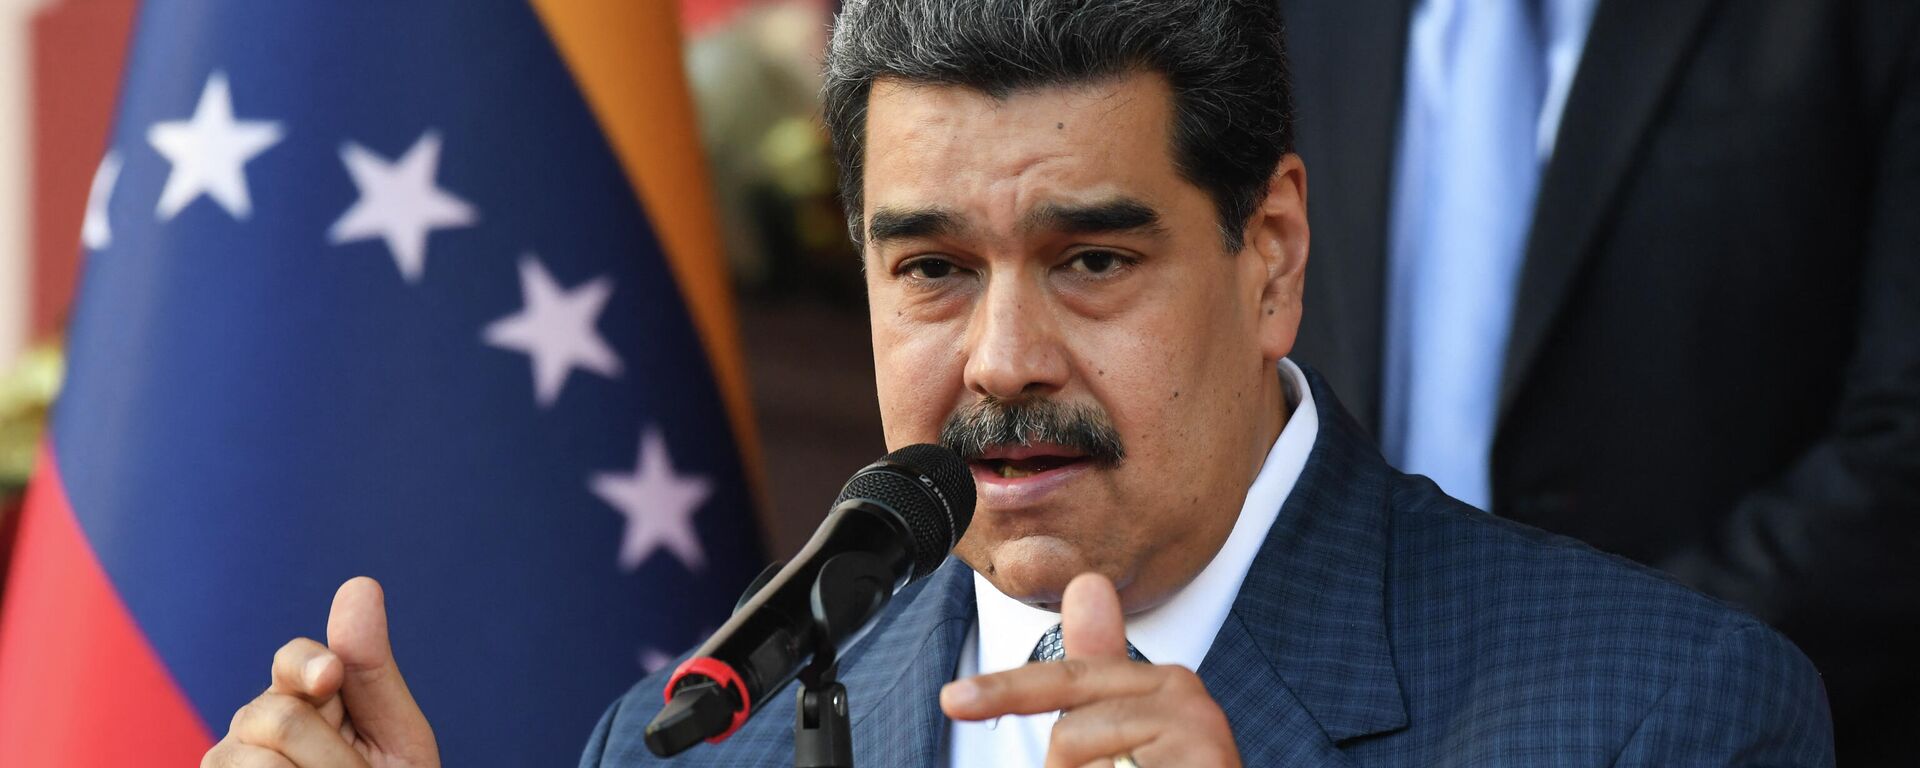 Nicolás Maduro, presidente de Venezuela - Sputnik Mundo, 1920, 05.11.2021